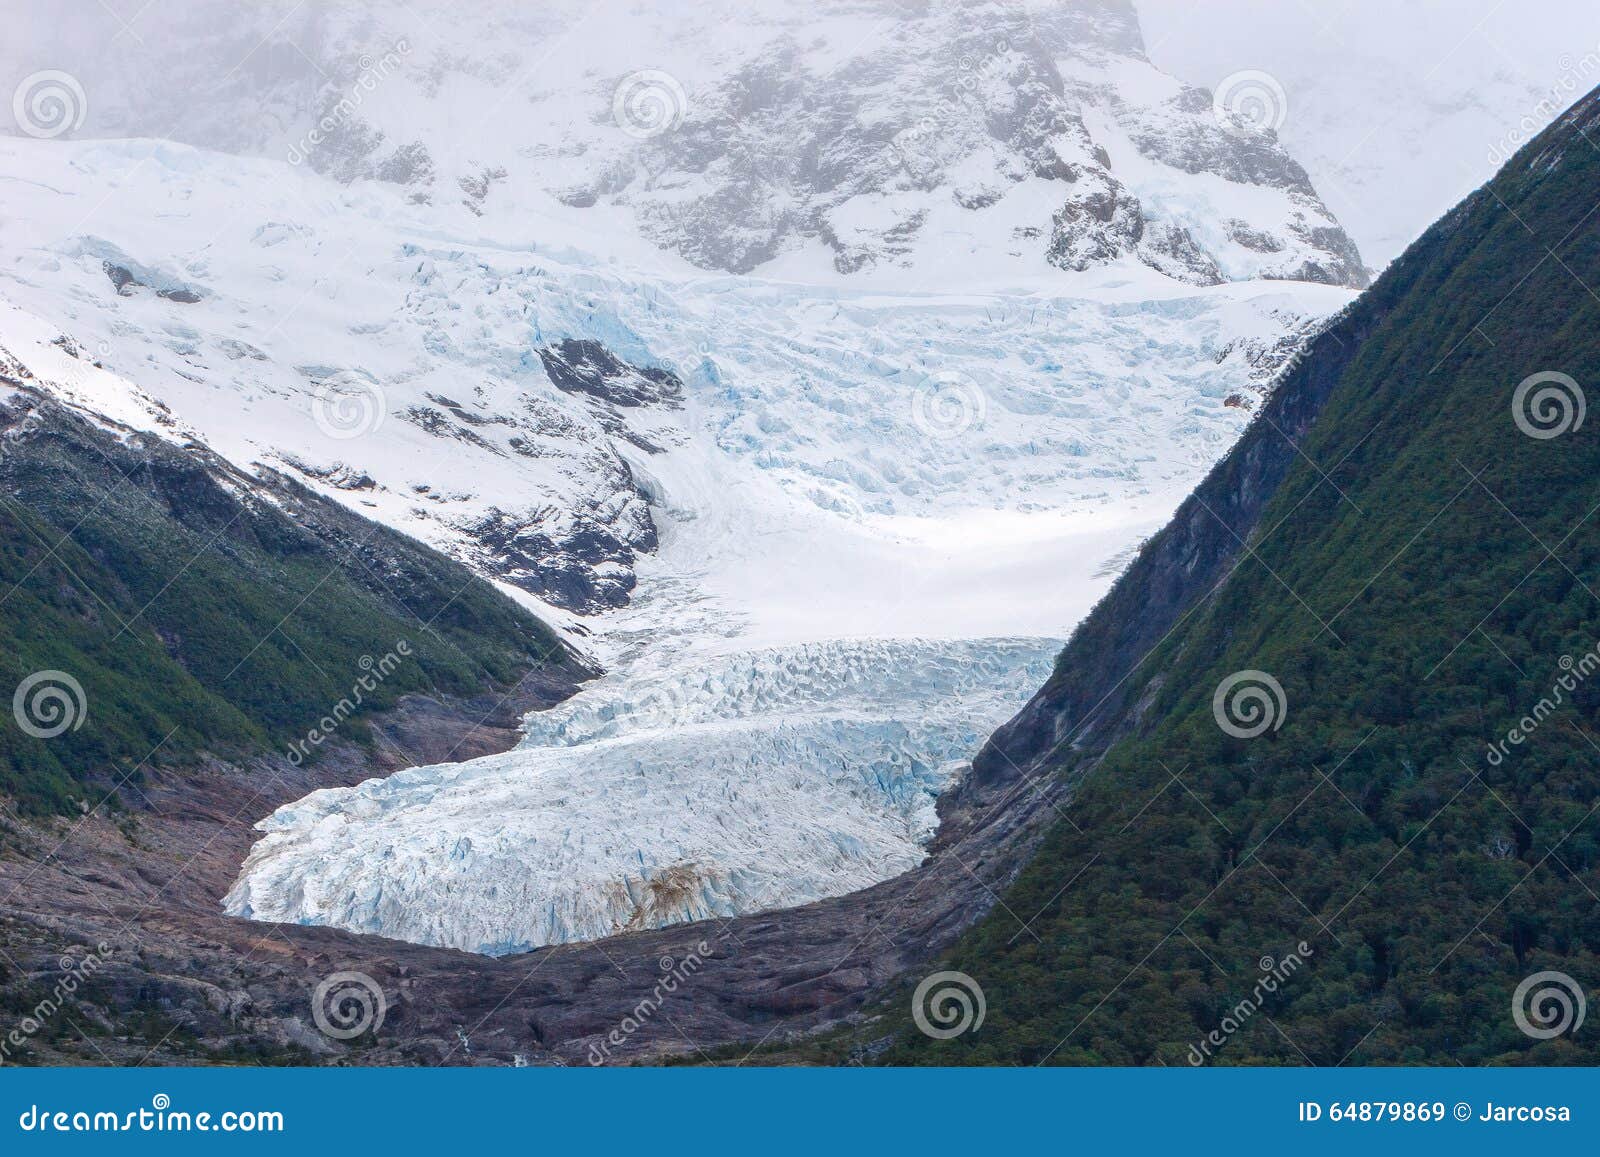 seco glacier, receding glacier, el calafate, patagonia, argentina